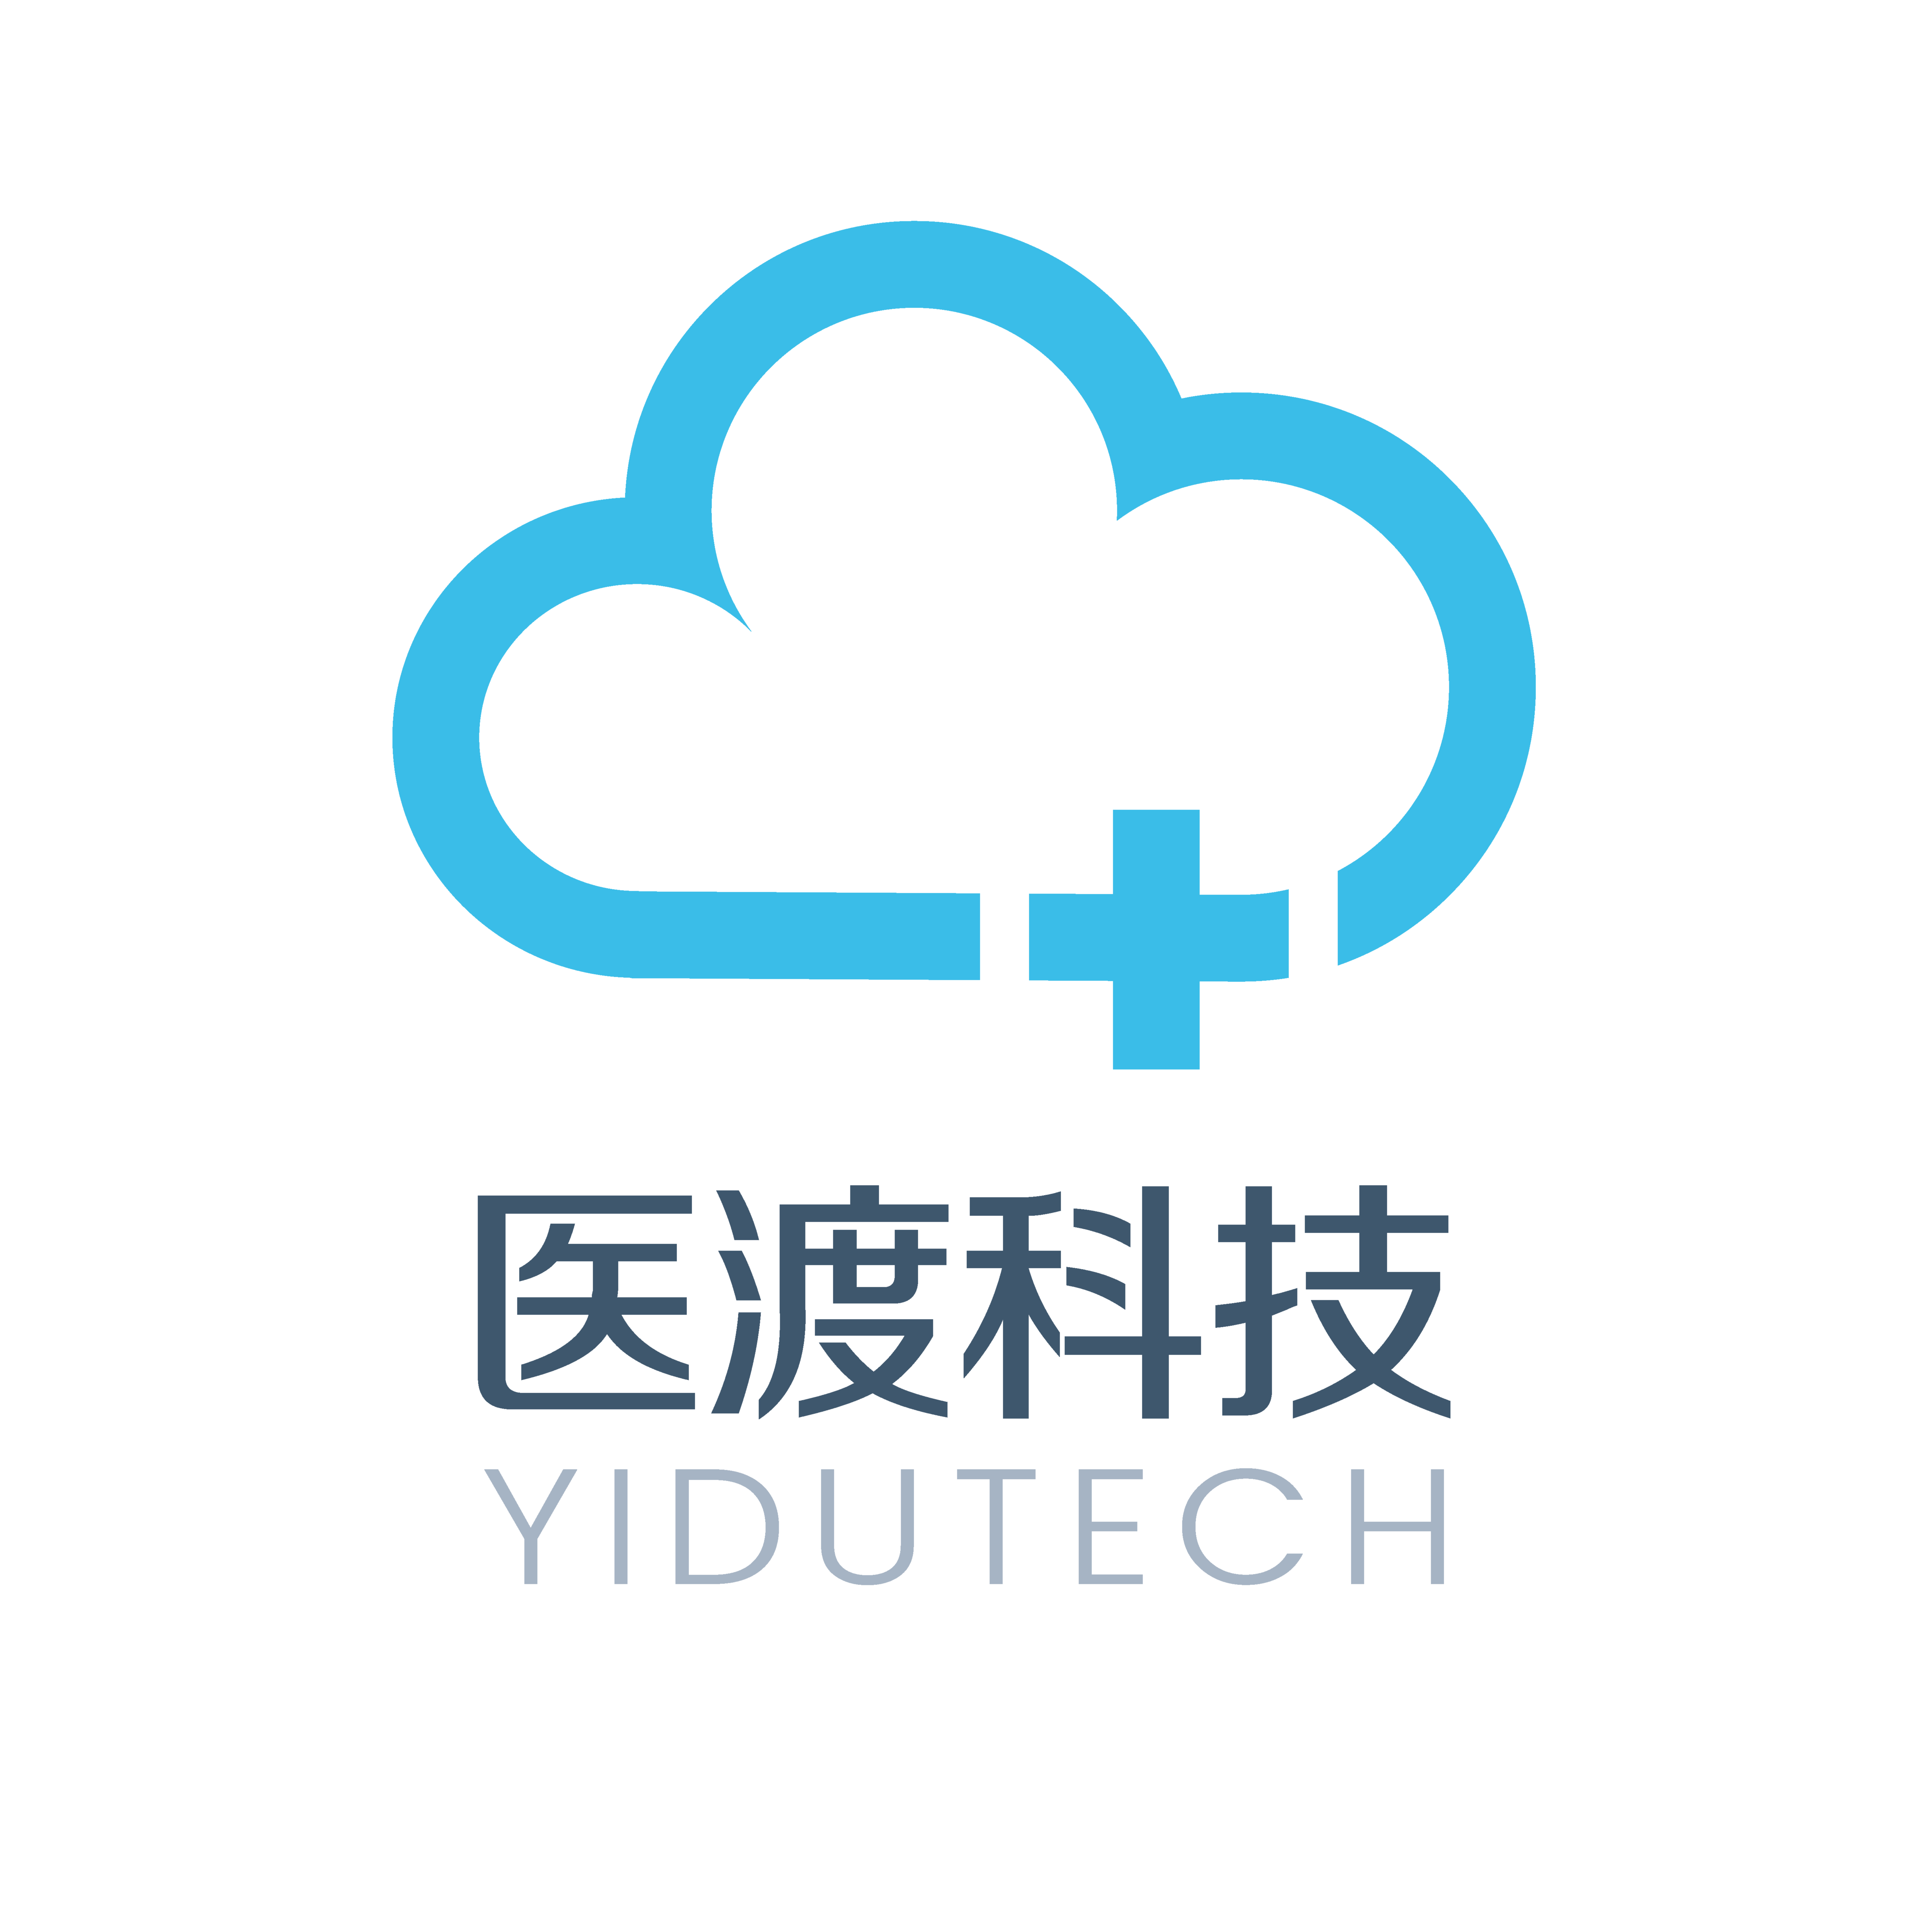 Yidu Tech